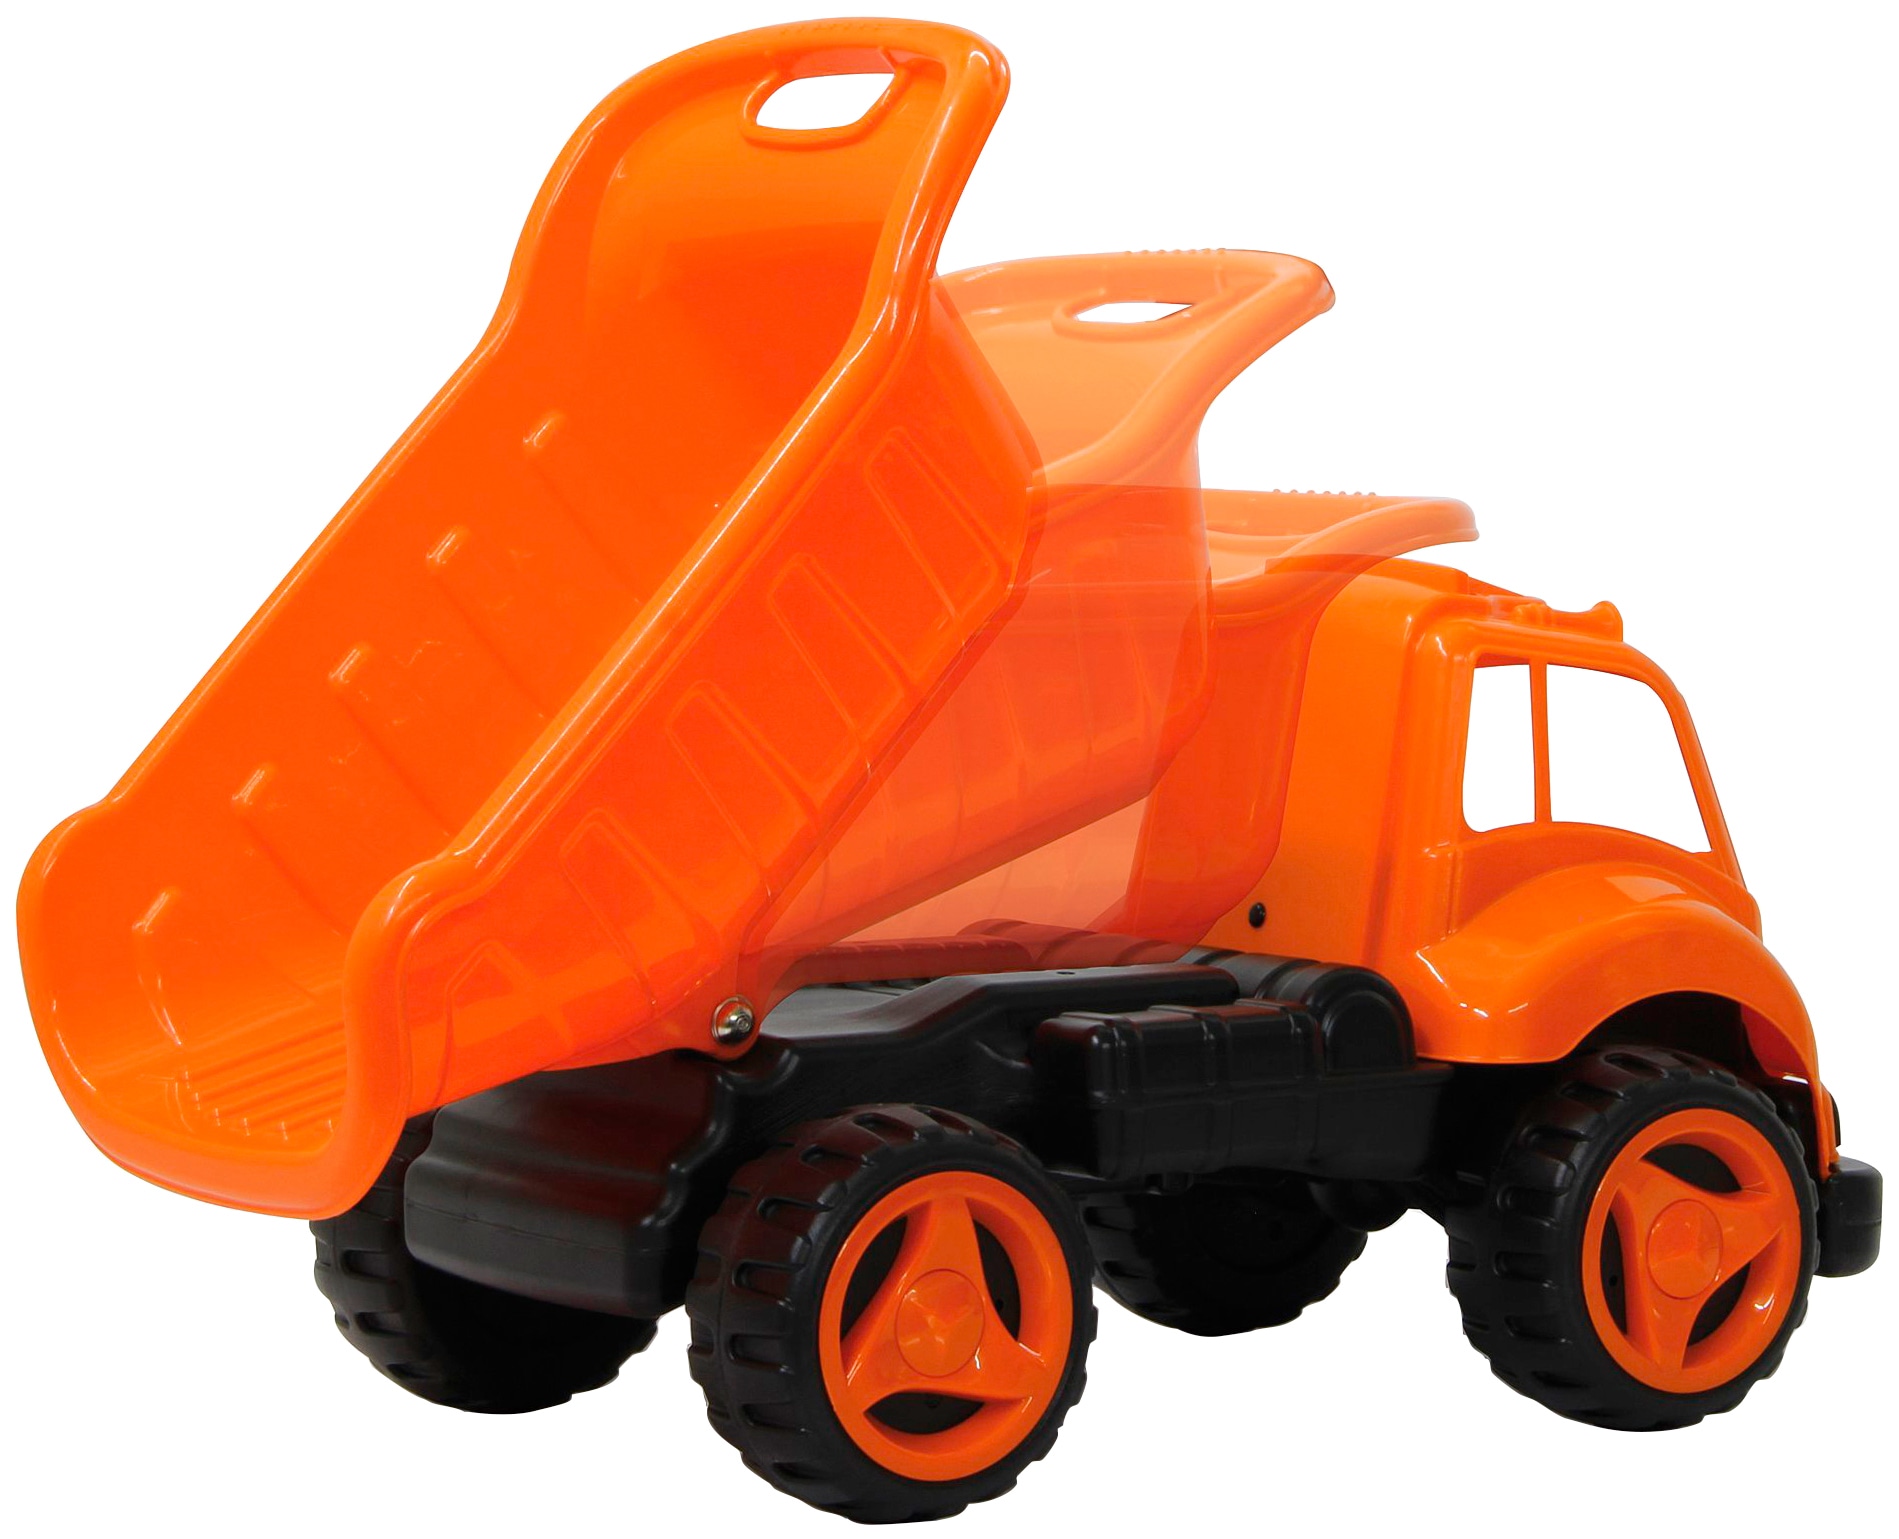 Jamara Spielzeug-Radlader »Dump Truck XL«, für Kinder ab 12 Monaten, BxLxH: 36x71x38 cm